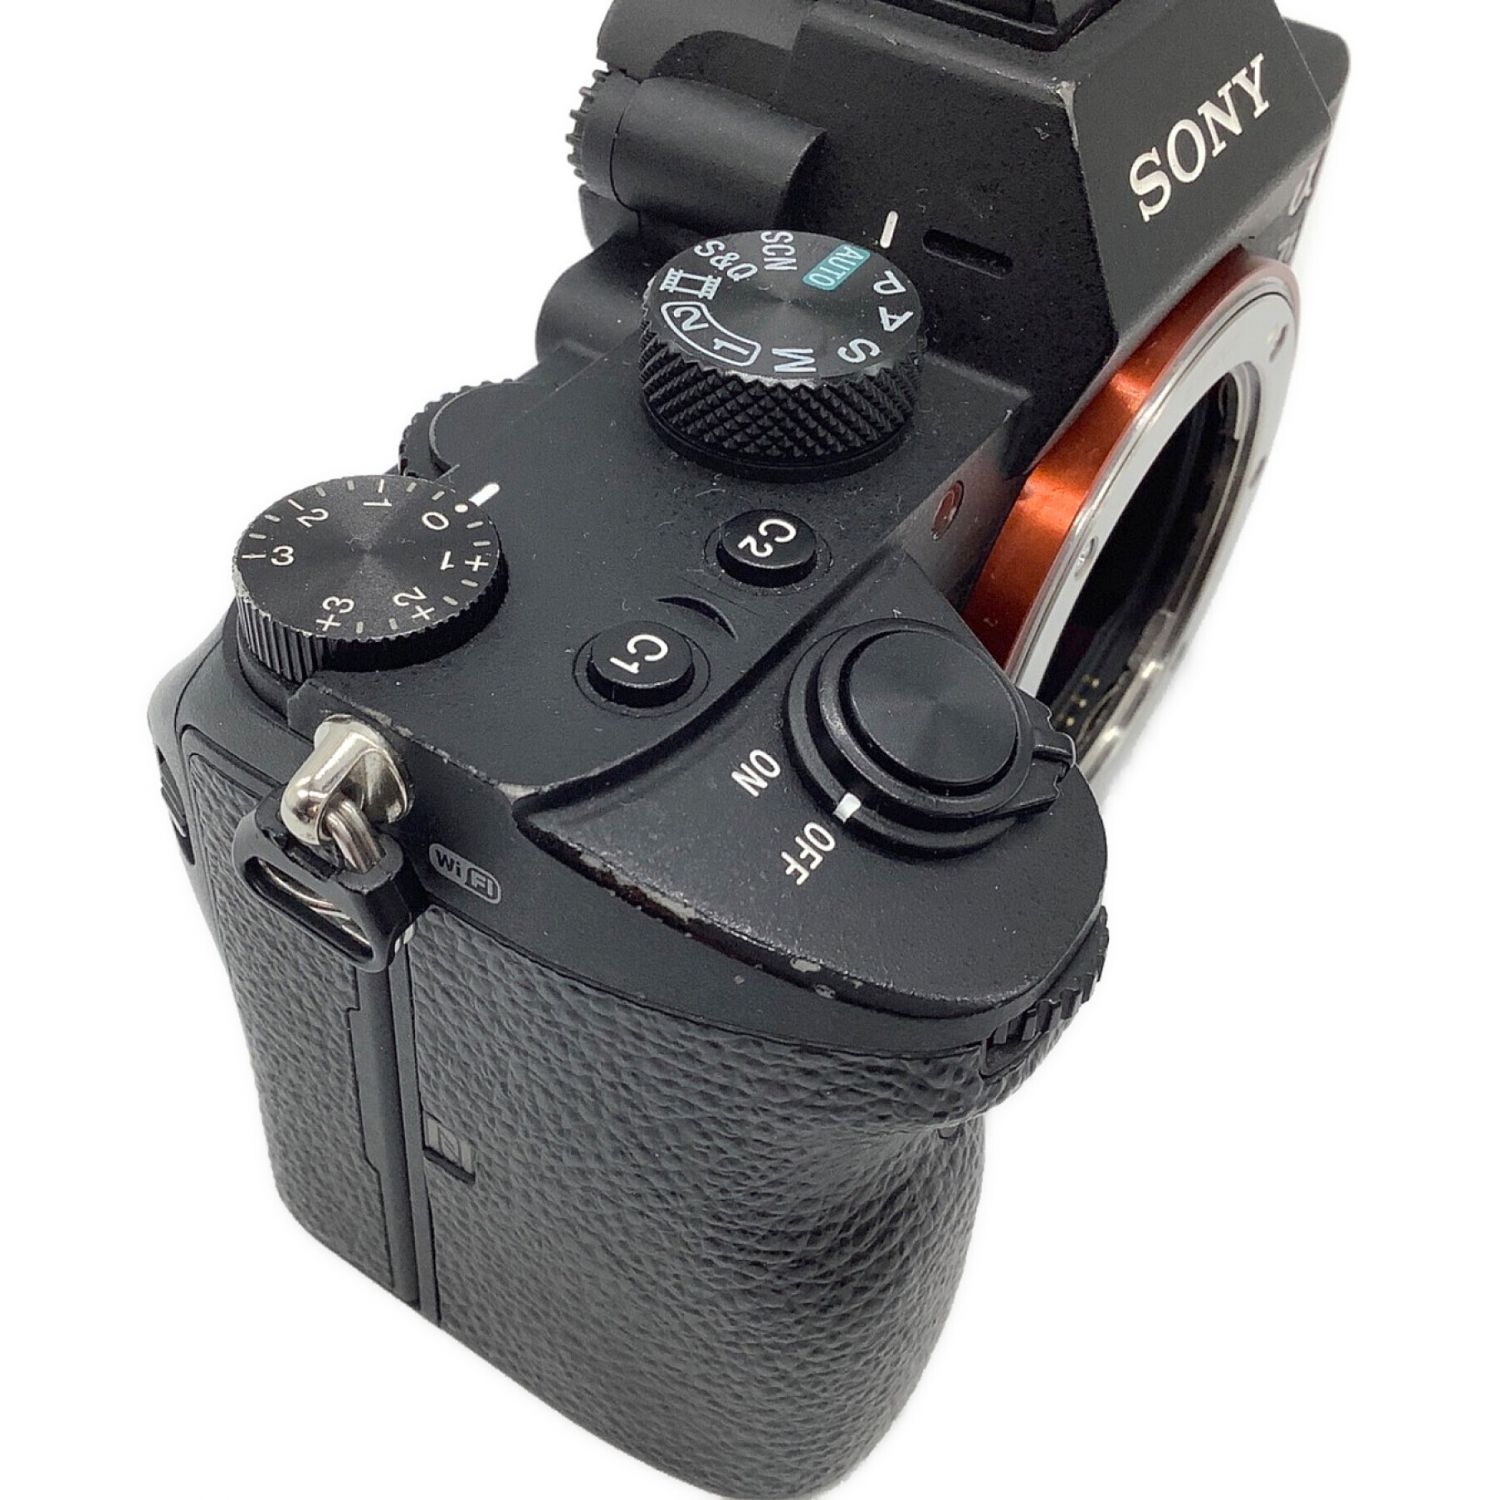 SONY ミラーレス一眼カメラ ILCE-7M3 2530万画素 専用電池 SDカード ...